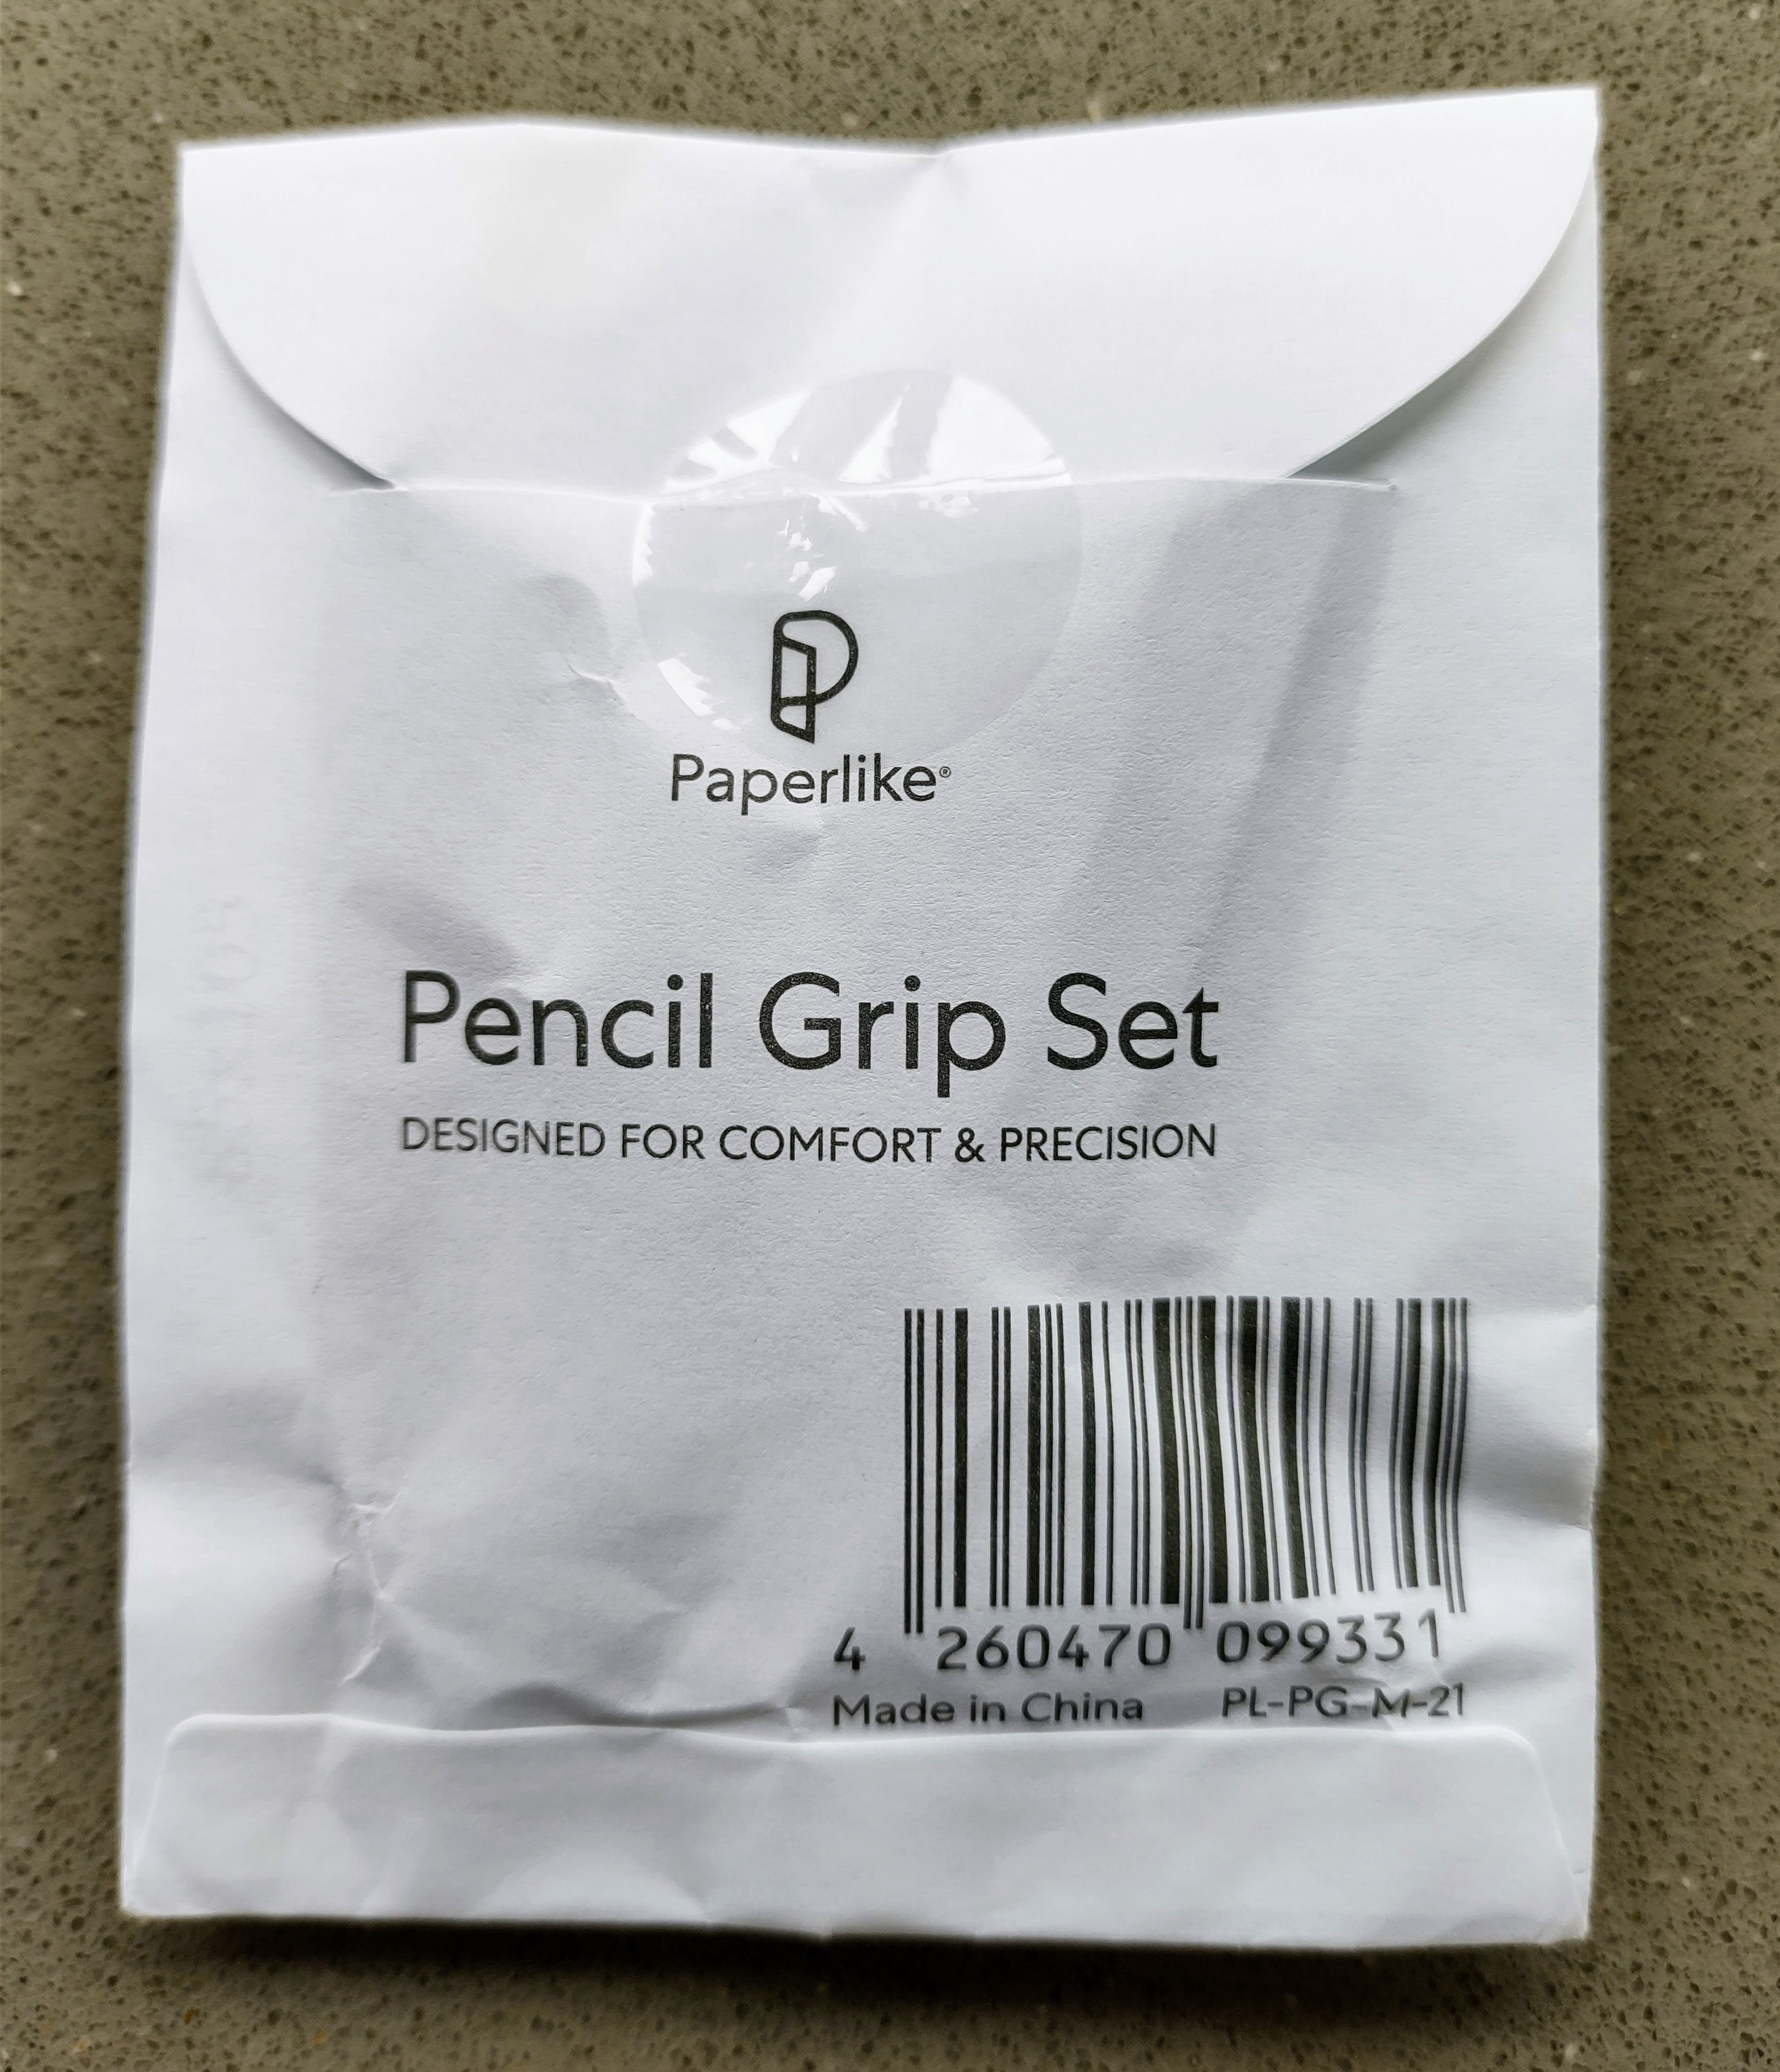 Envoltorio de los PaperLike Pencil Grips